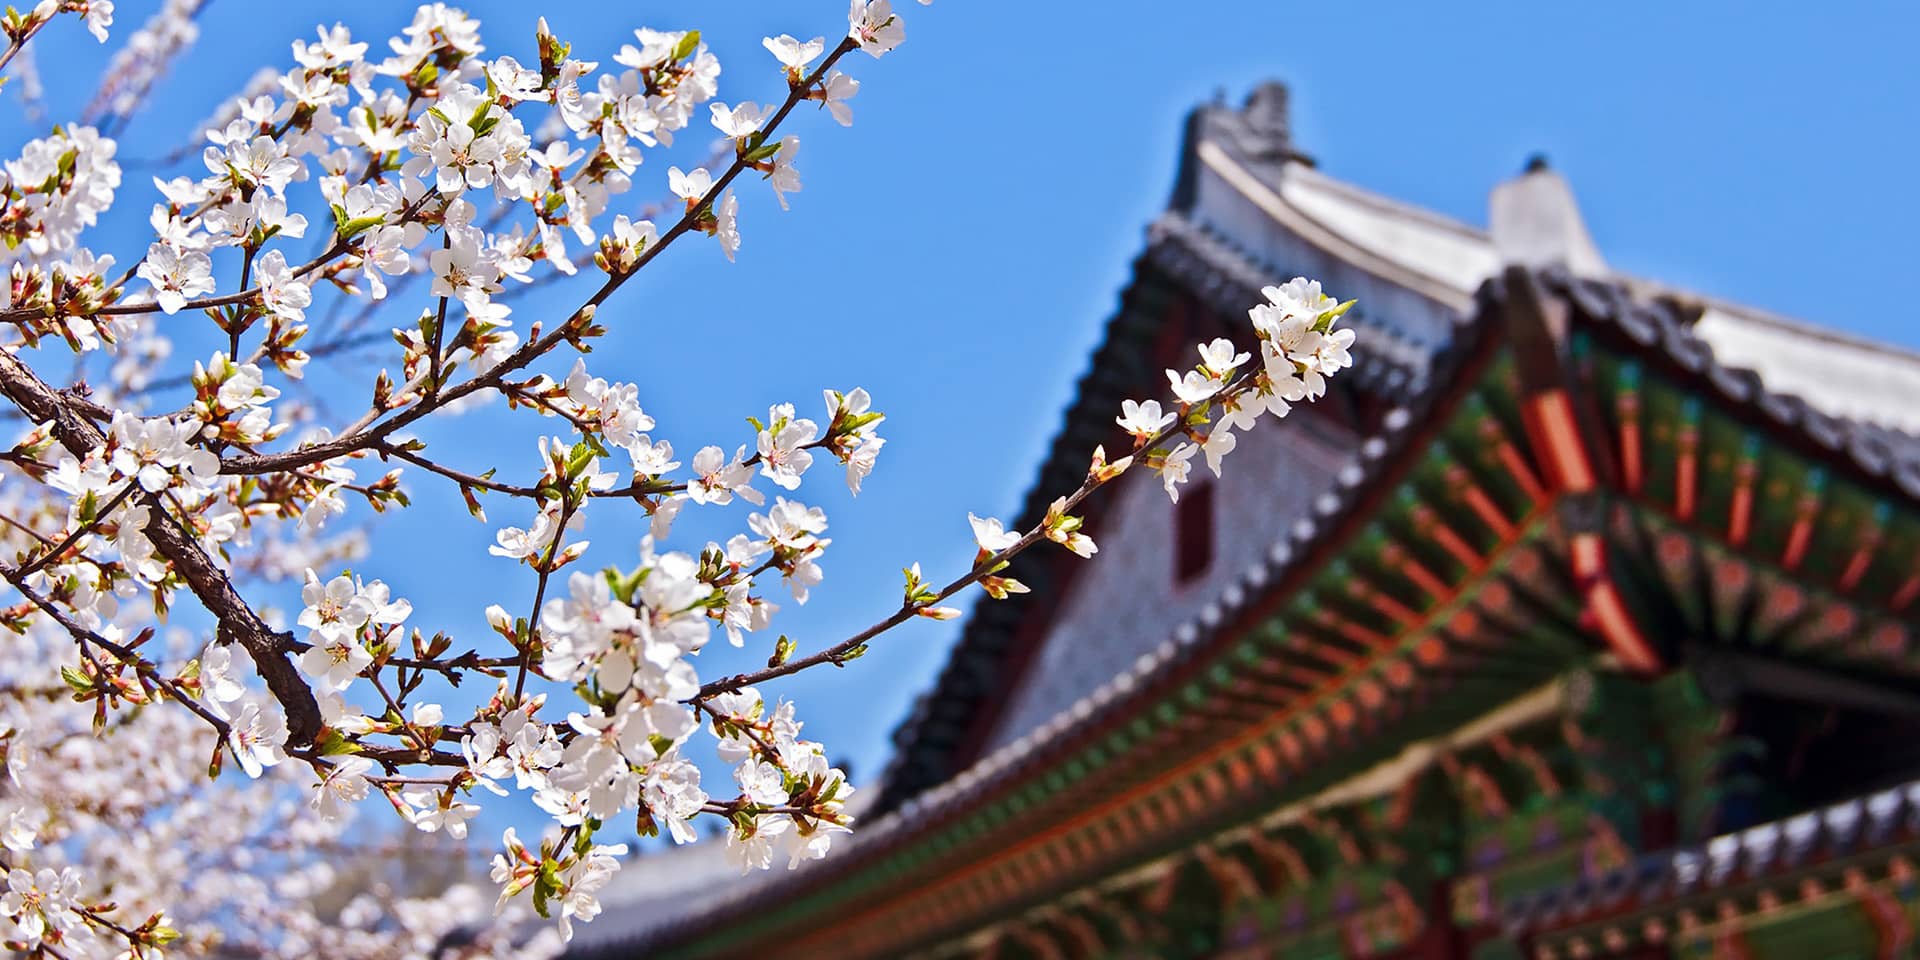 Billede af klassisk koreansk bygningsværk med blomstrende kirsebærtræ foran